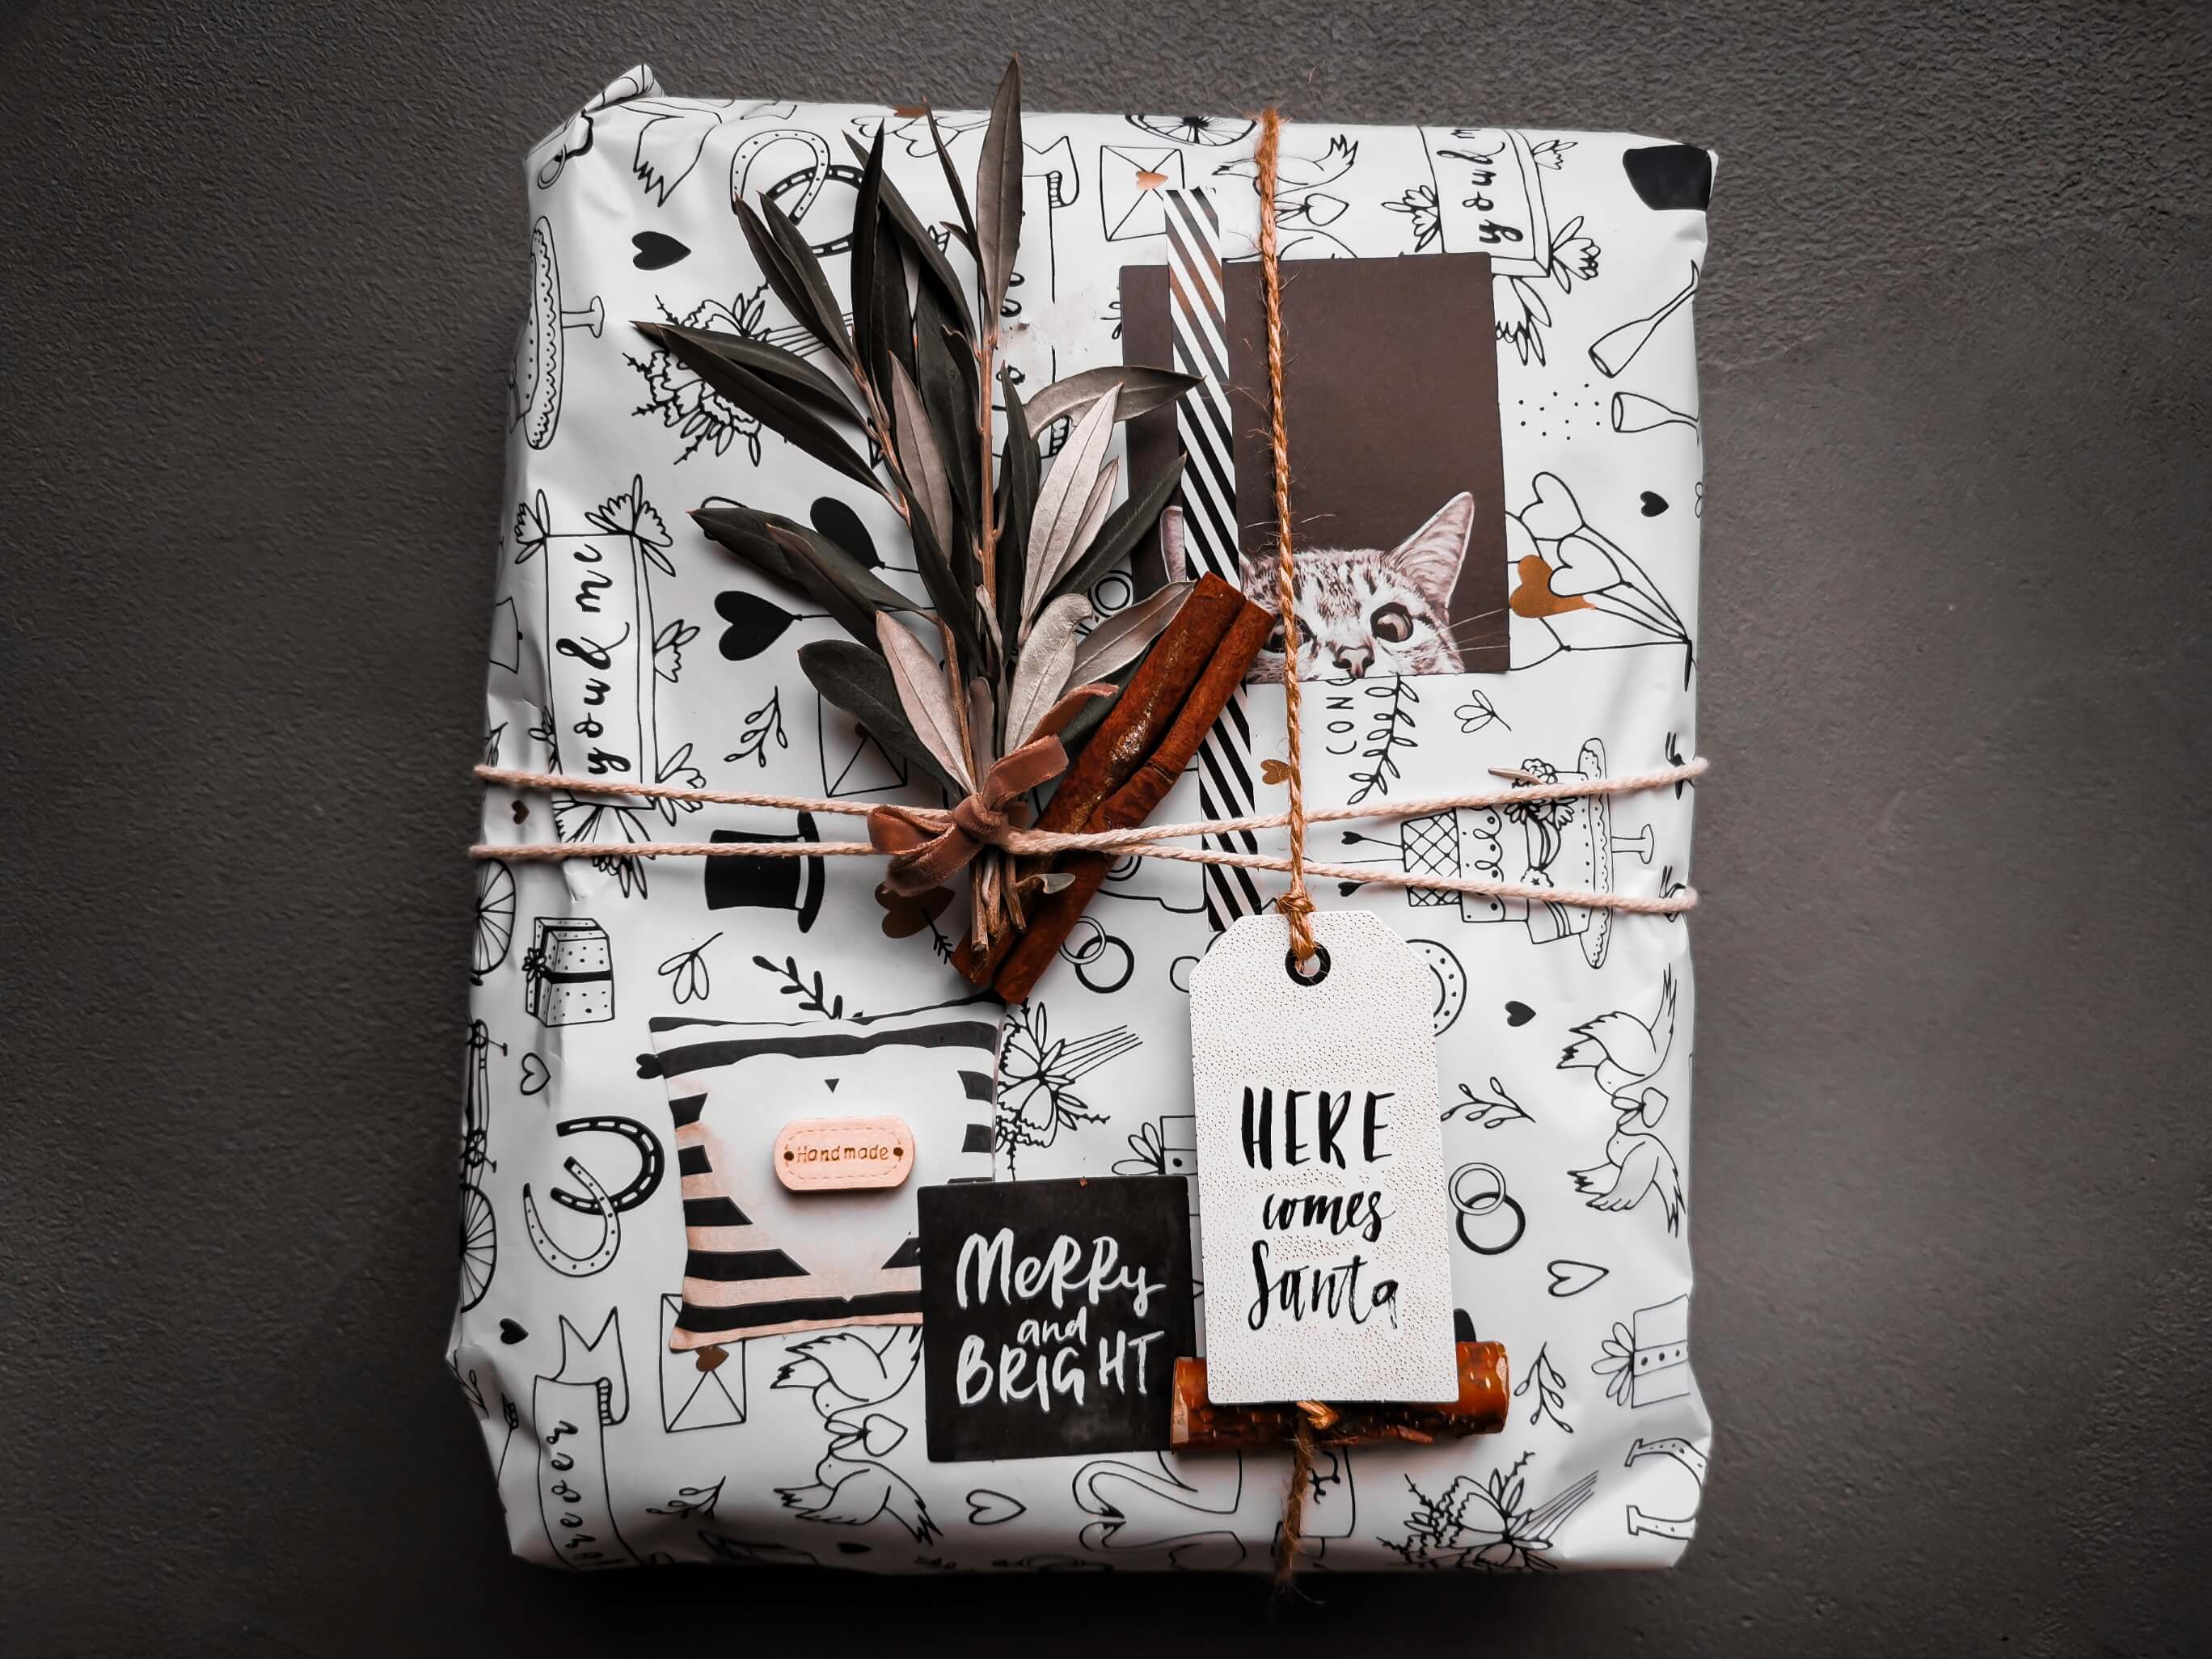 IMG 20191207 112632 resized 20191208 060253348 - Geschenke verpacken: 11 kreative Tipps zum Selbermachen